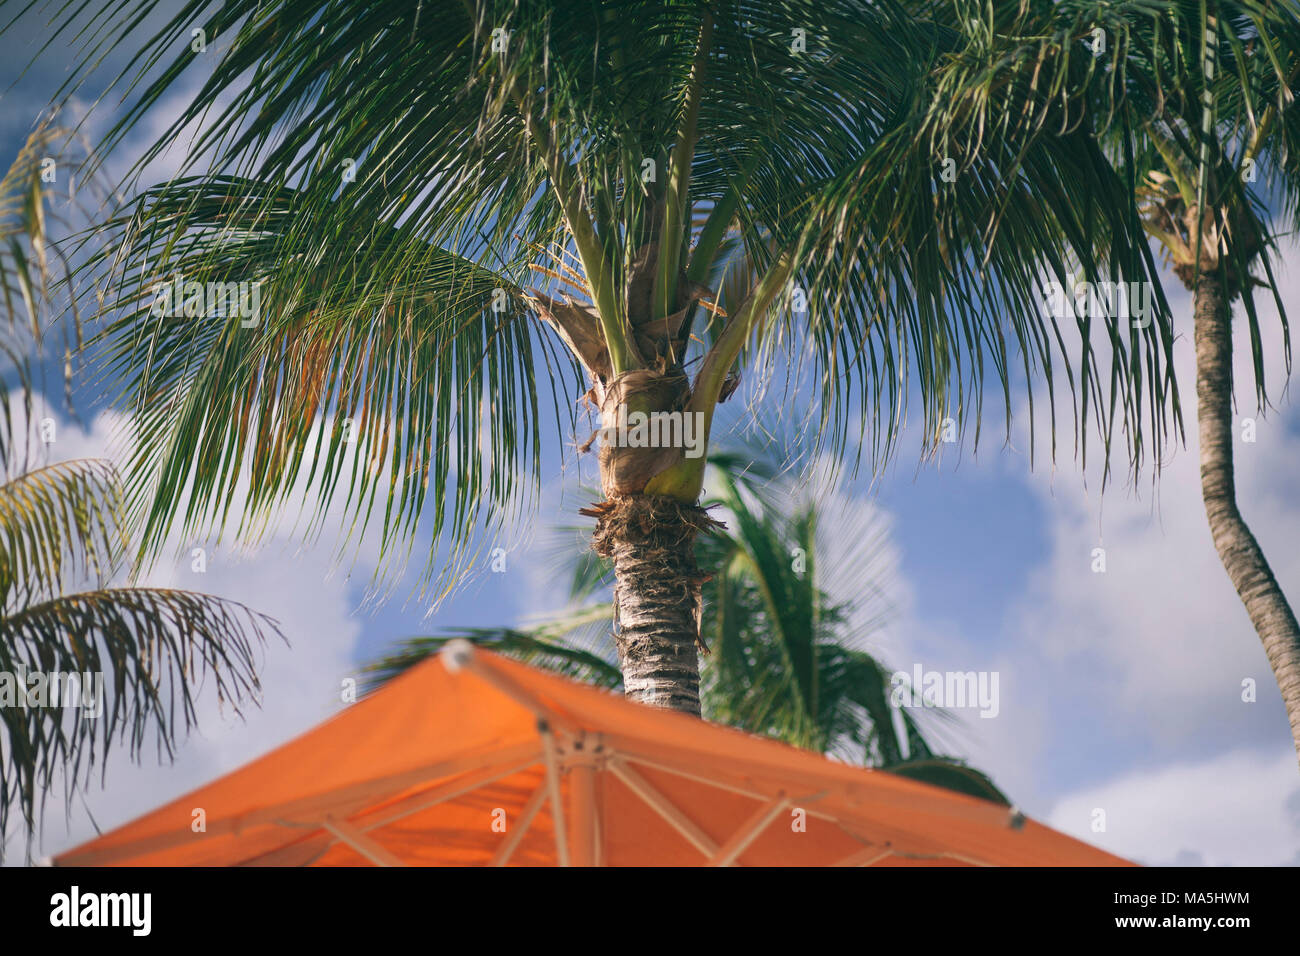 Palm trees on a beach club on bonaire island on the caribbean Stock Photo